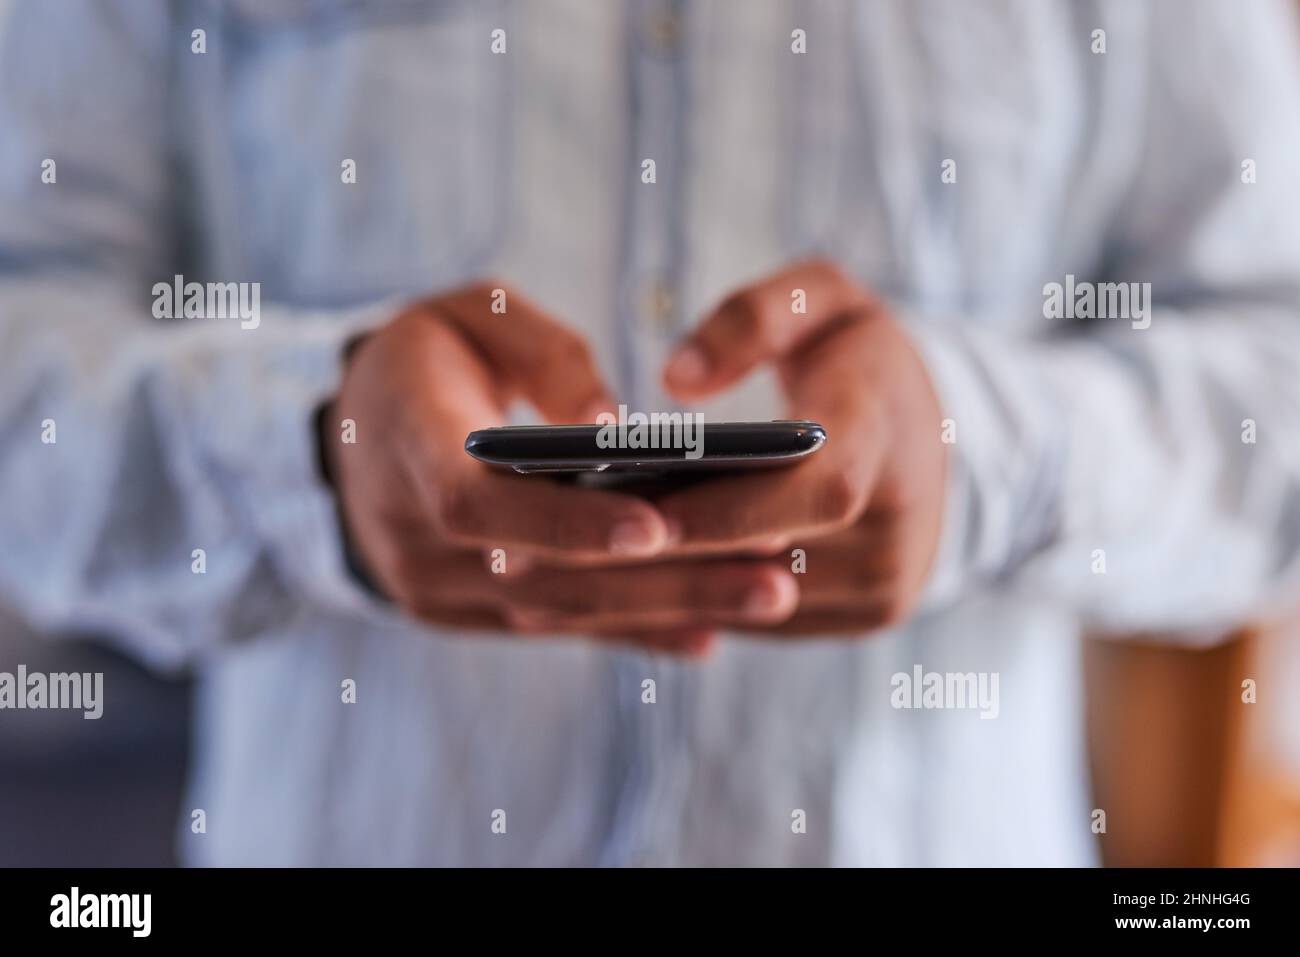 Un colpo stretto delle mani di un uomo che digita su un telefono cellulare Foto Stock